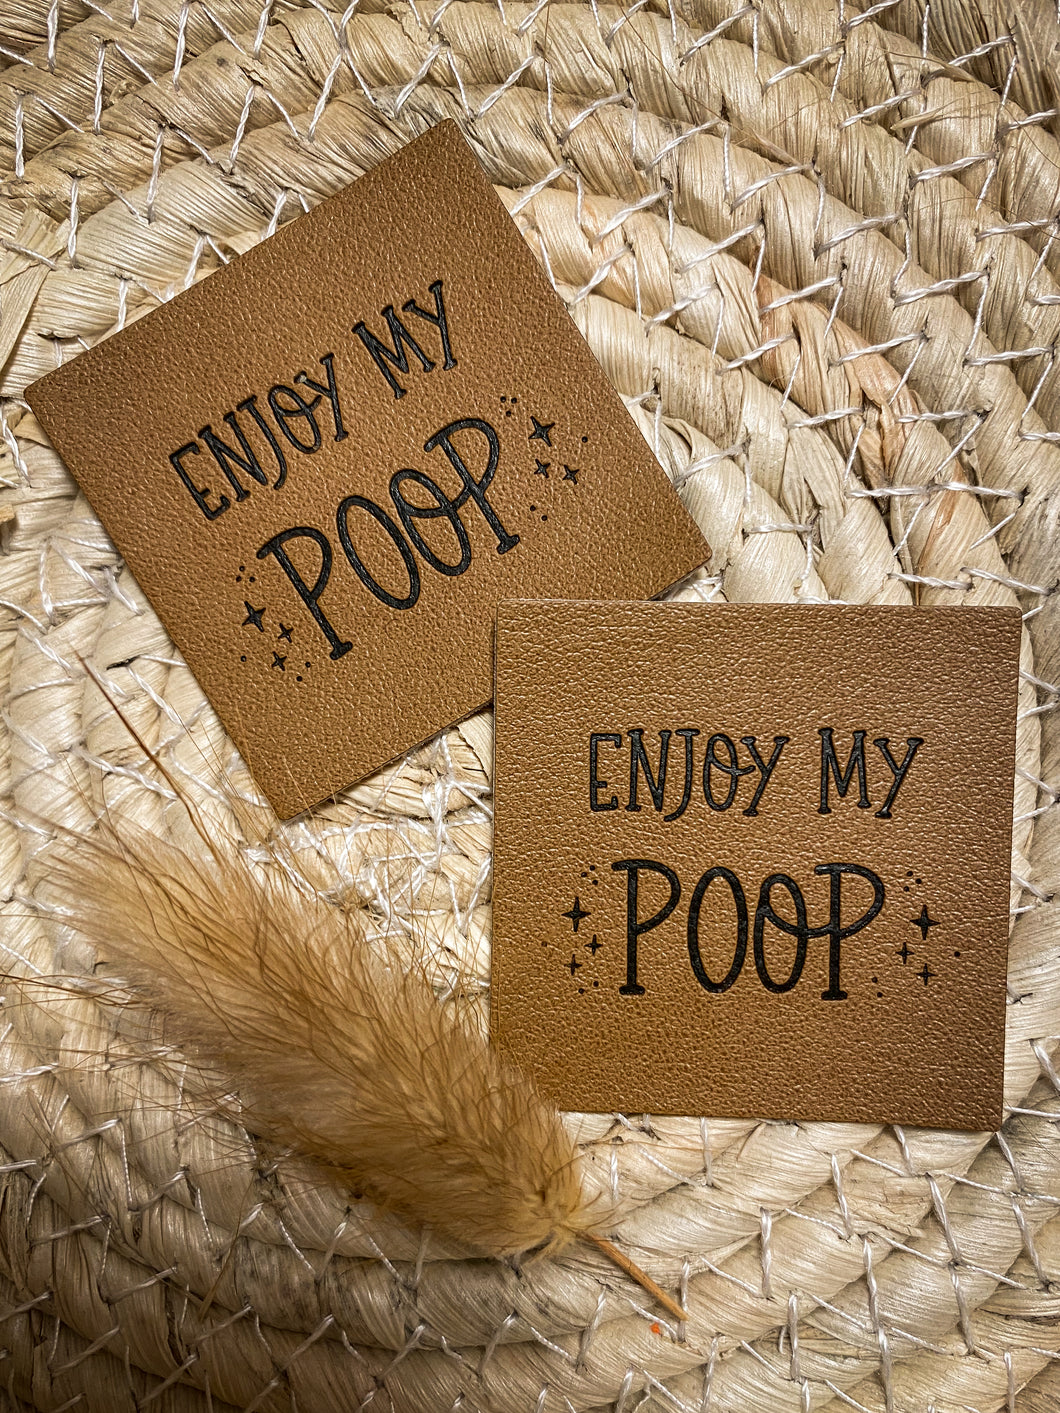 Enjoy my Poop Label